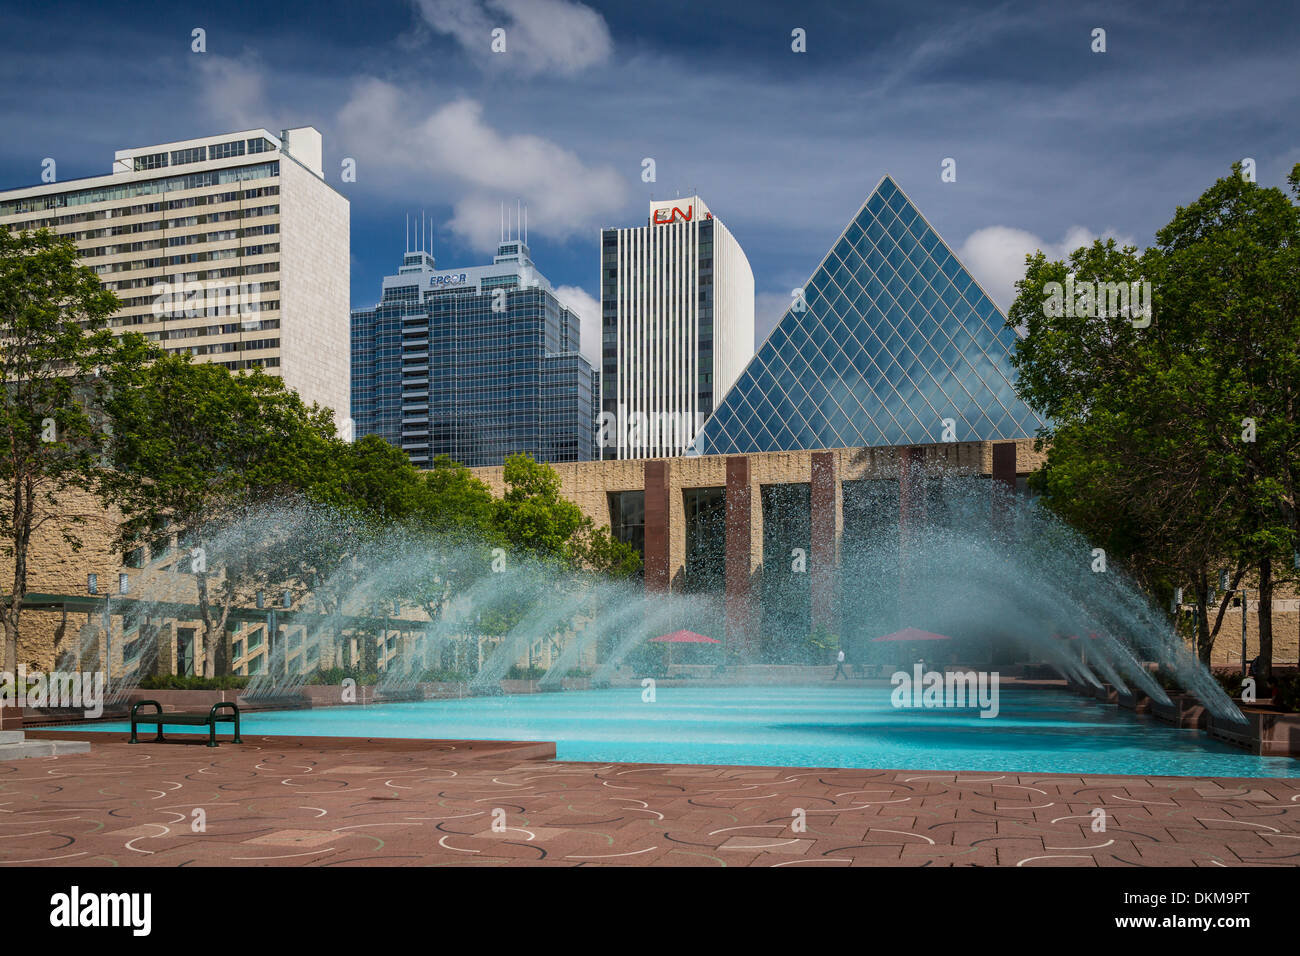 La fontana decorativa e piscina presso il municipio di Edmonton, Alberta, Canada. Foto Stock